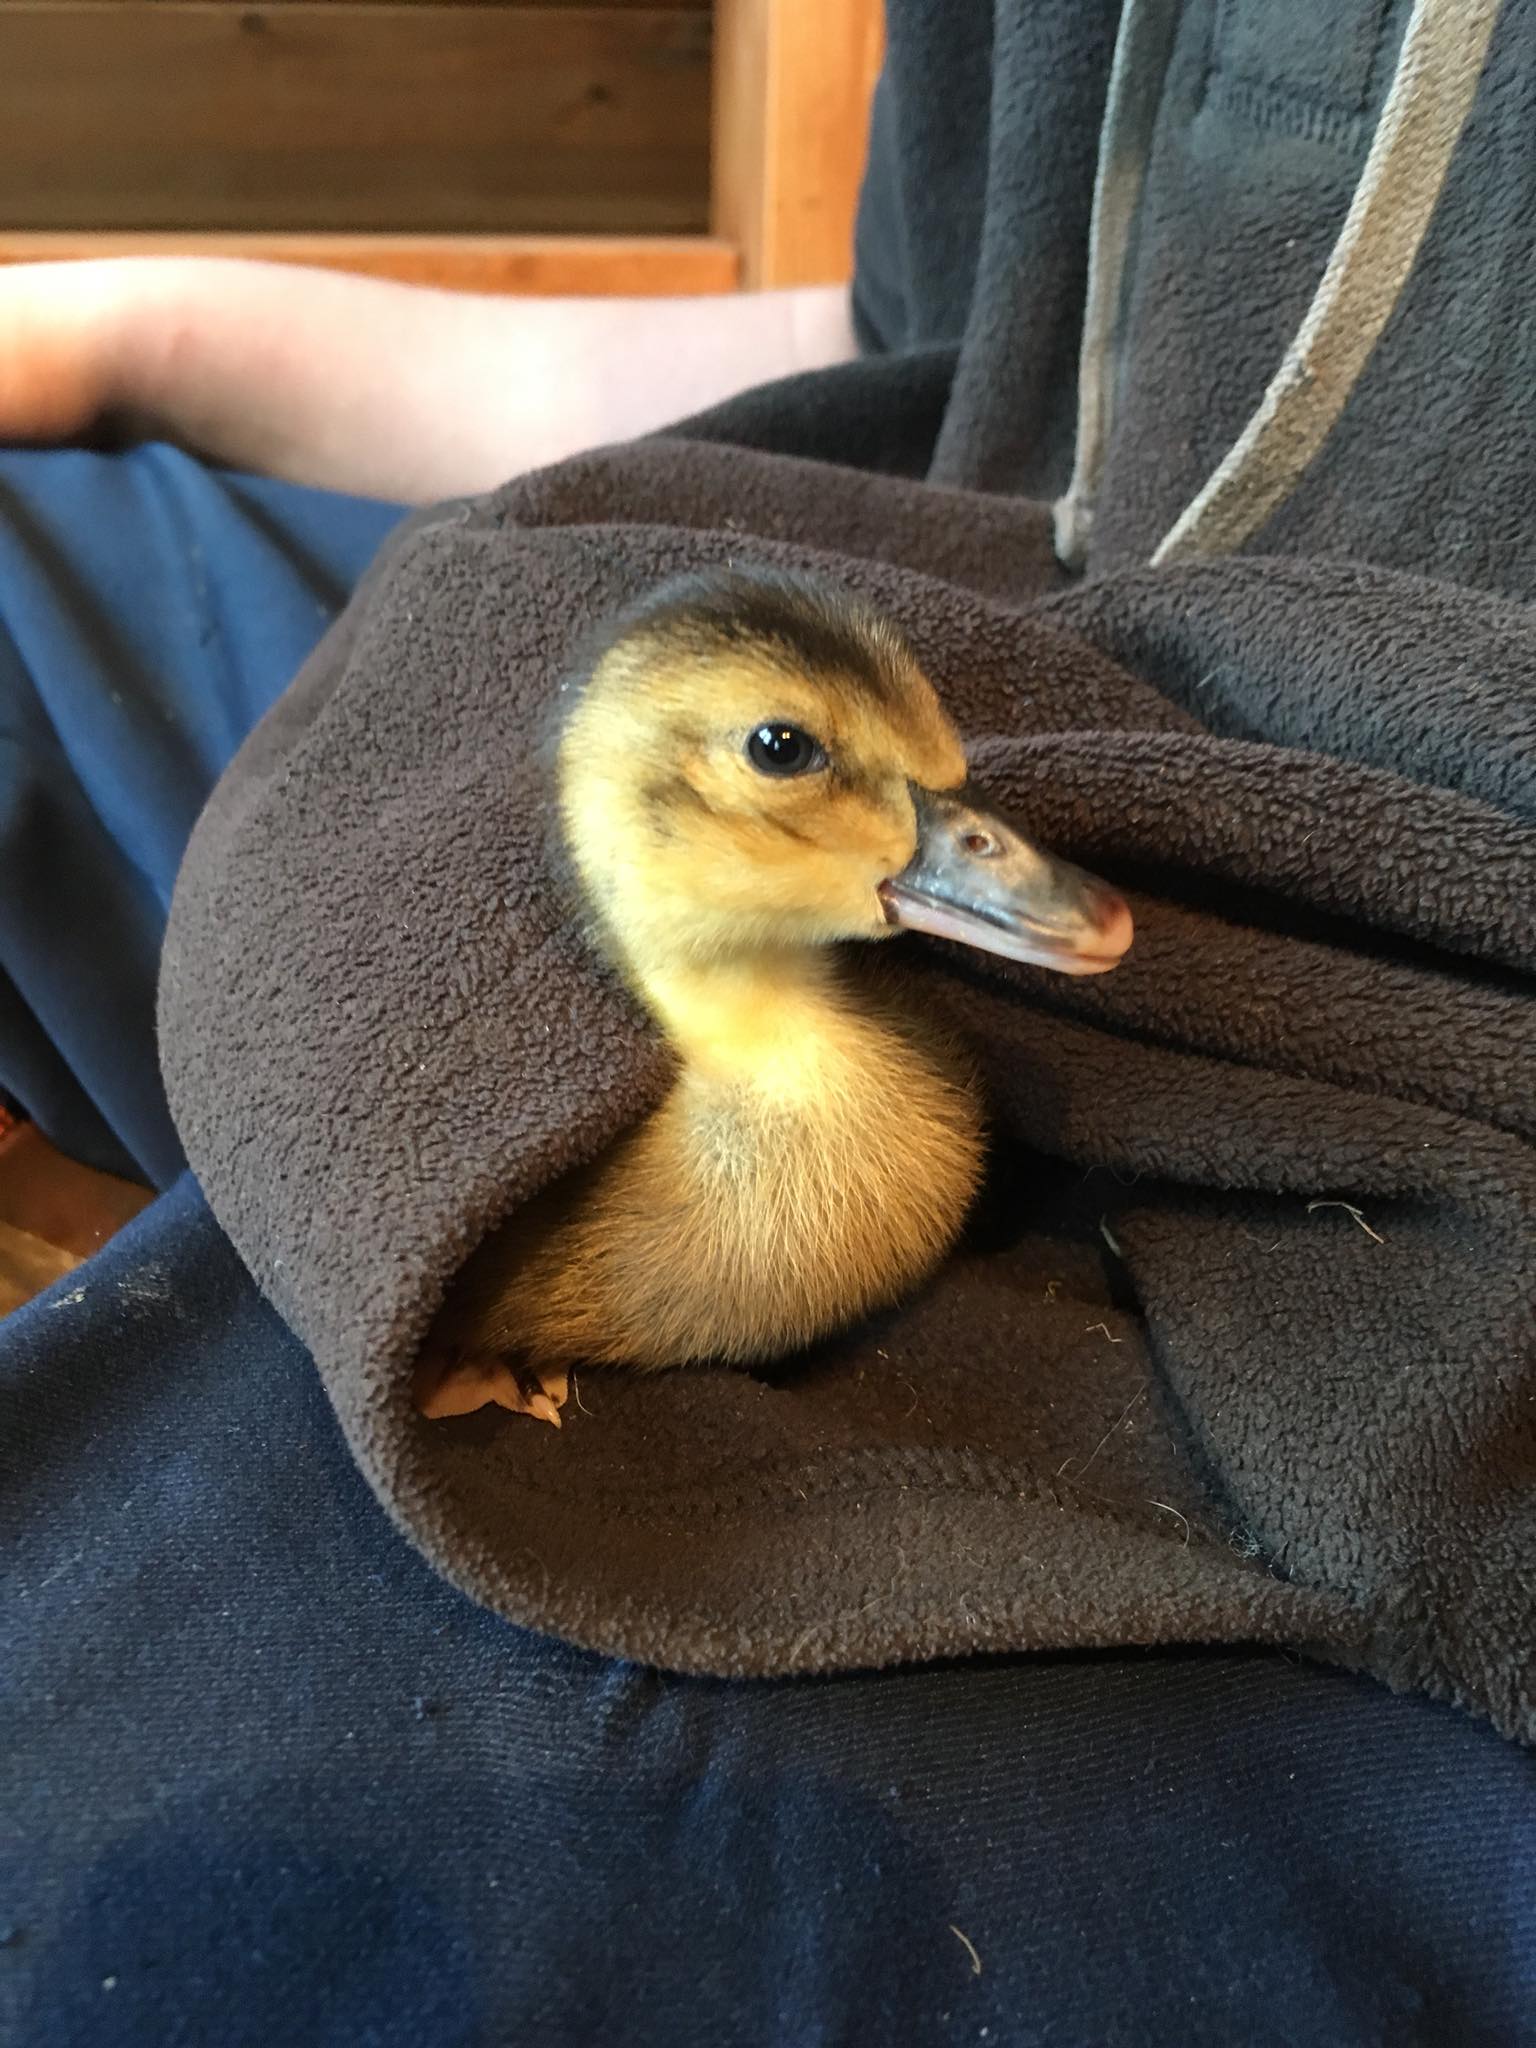 Duckling in pocket.jpg